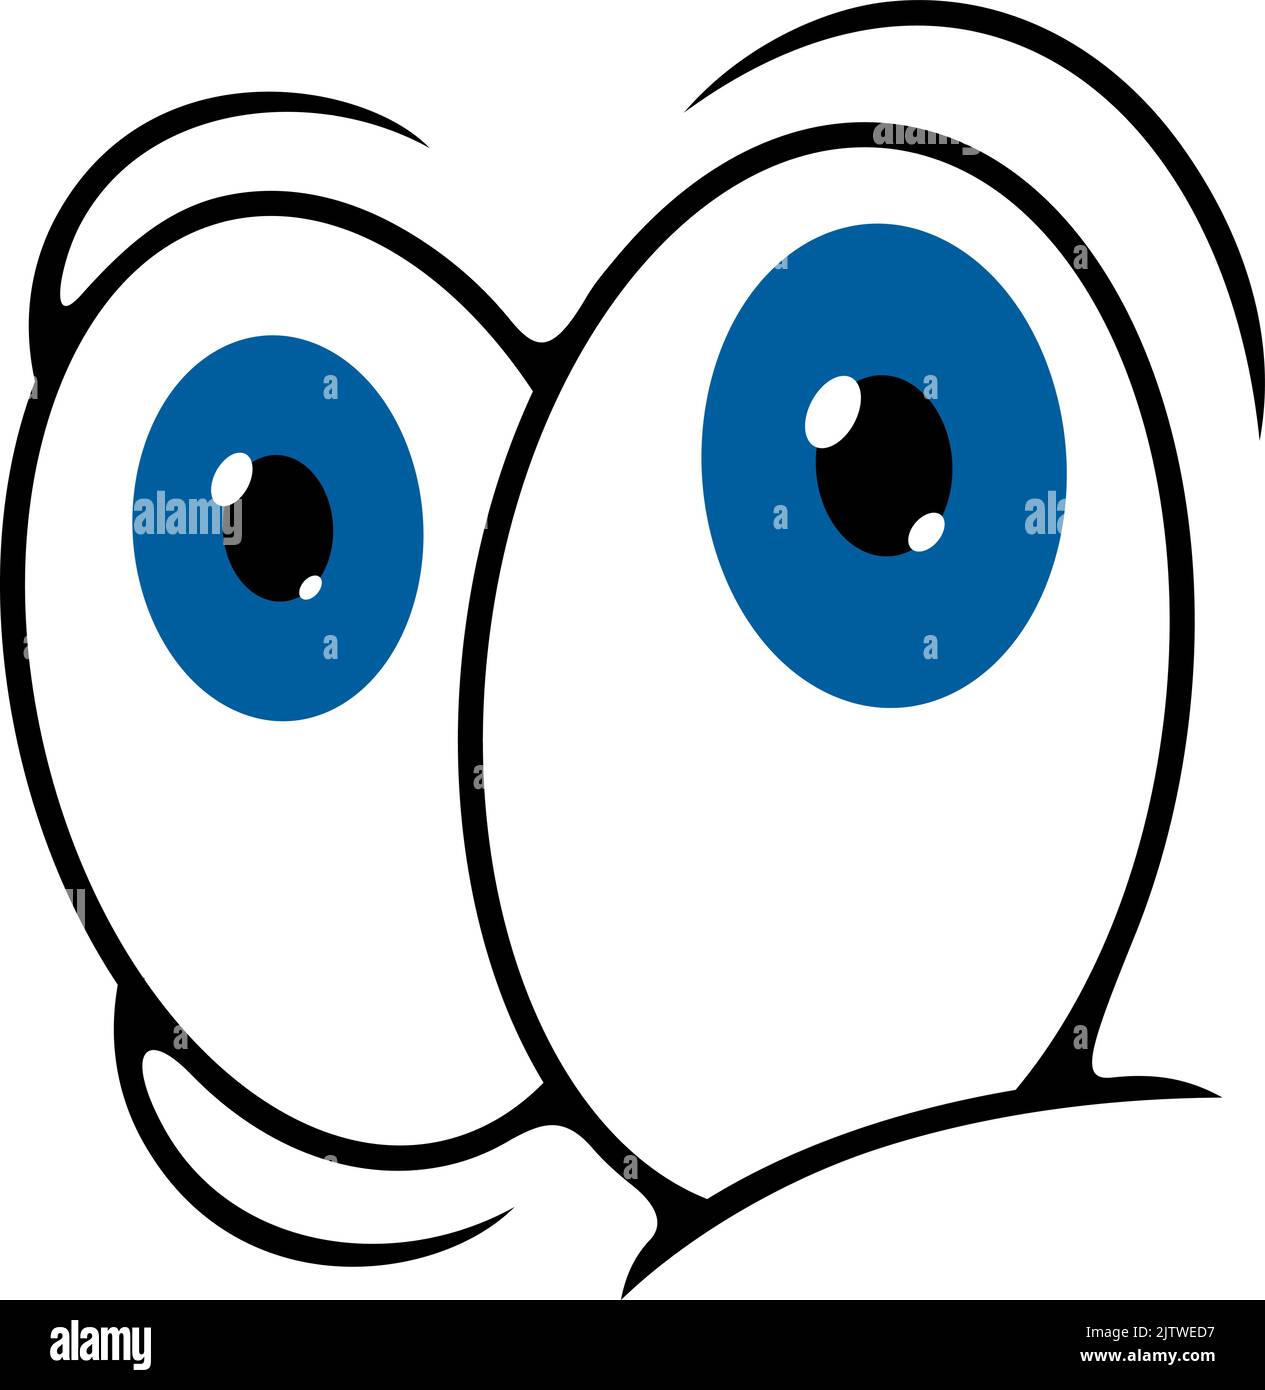 Occhi, personaggio e sorriso del volto dei cartoni animati, icona emoticon dei fumetti vettoriali. Doodle emozioni facciali con grandi occhi blu googly, simbolo di espressione emoji Illustrazione Vettoriale